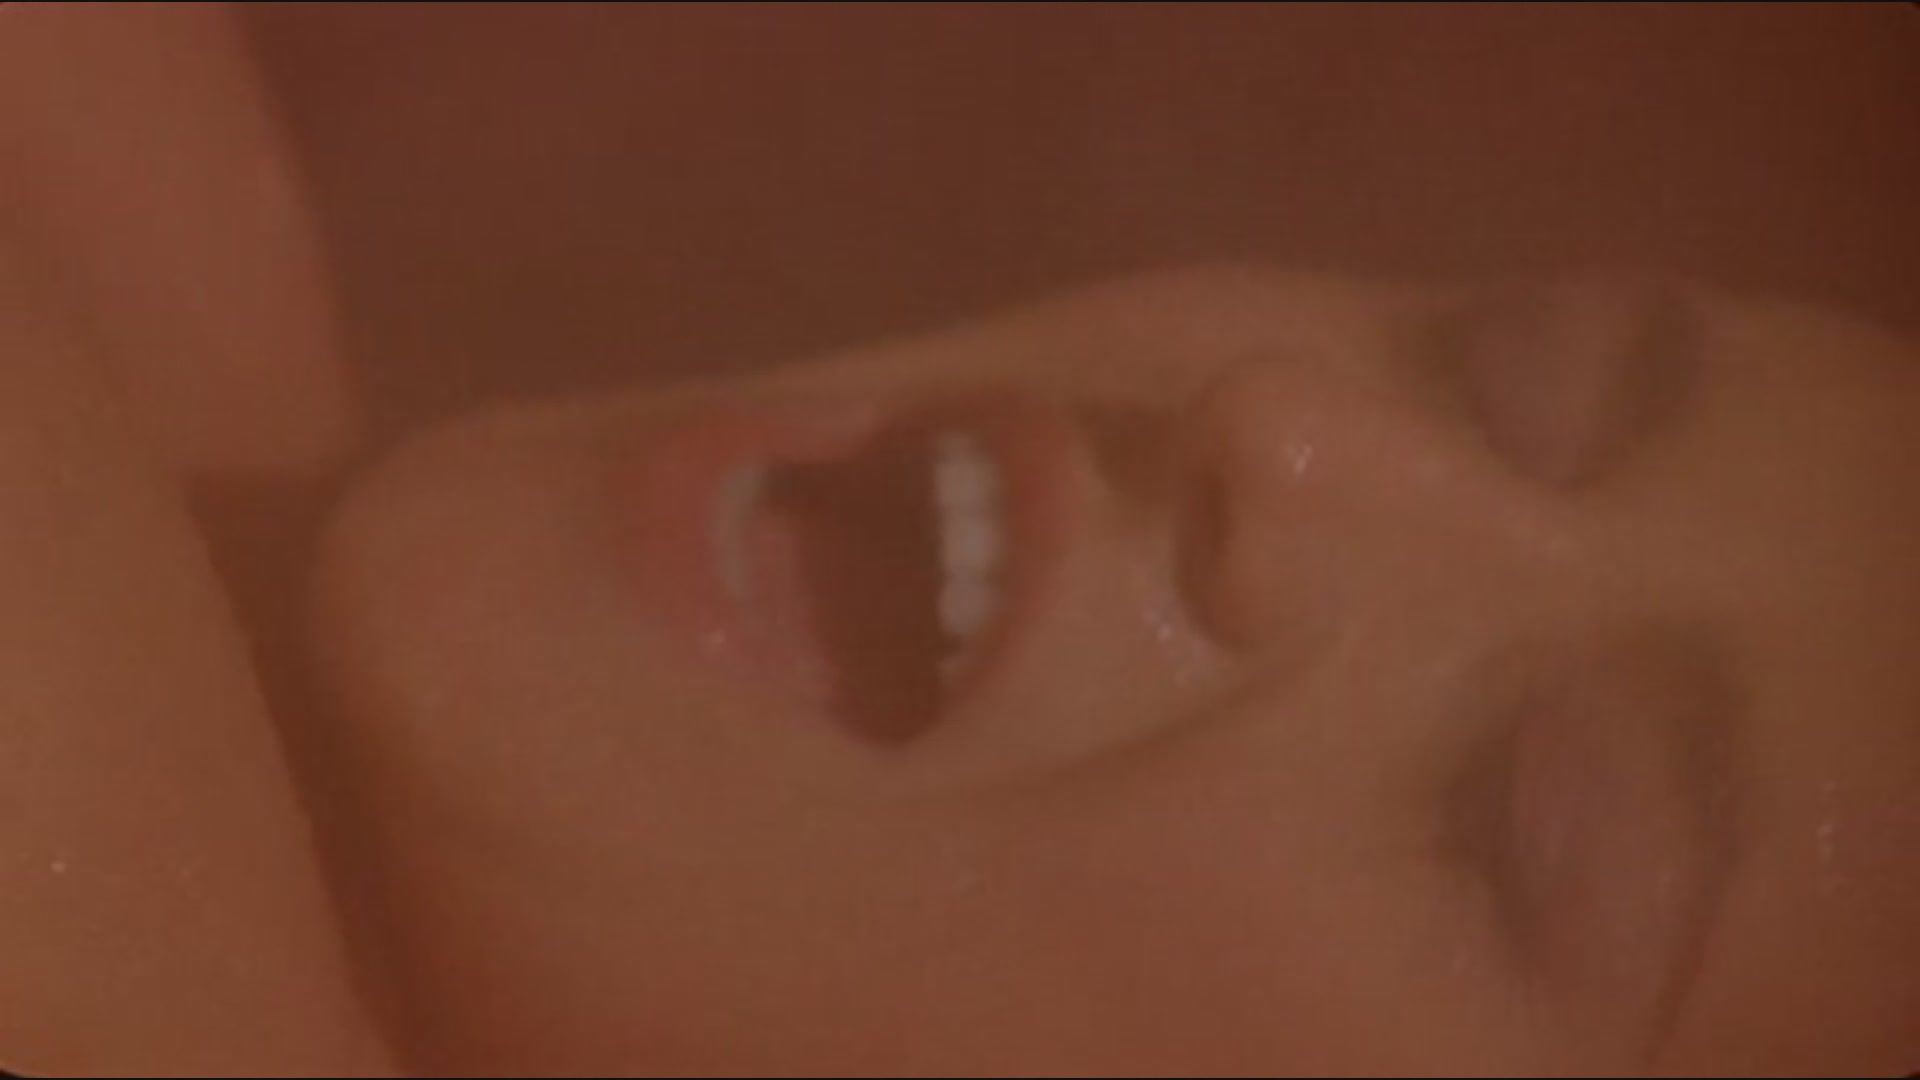 Oldman Silvia Rossi sex scene in sauna from the movie "Fallo" LiveX